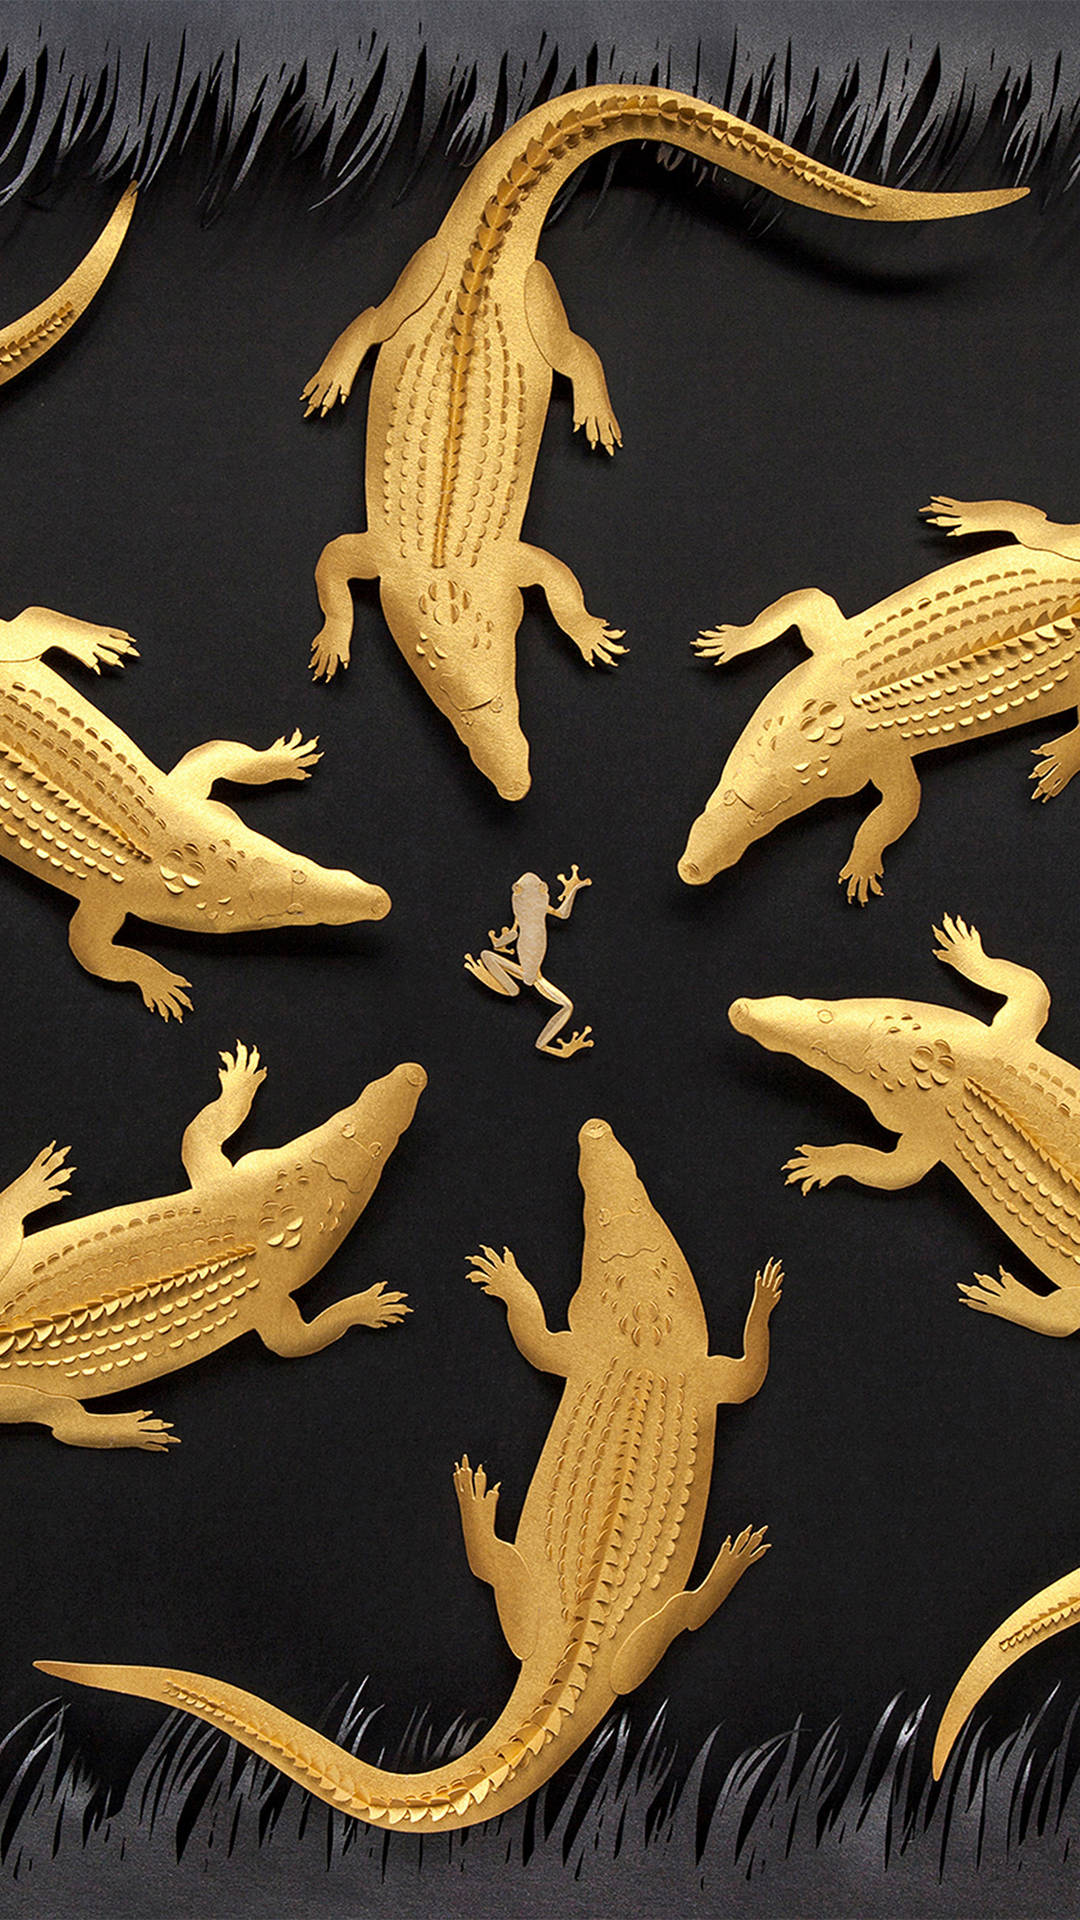 Telefon Golden Alligator Wallpaper